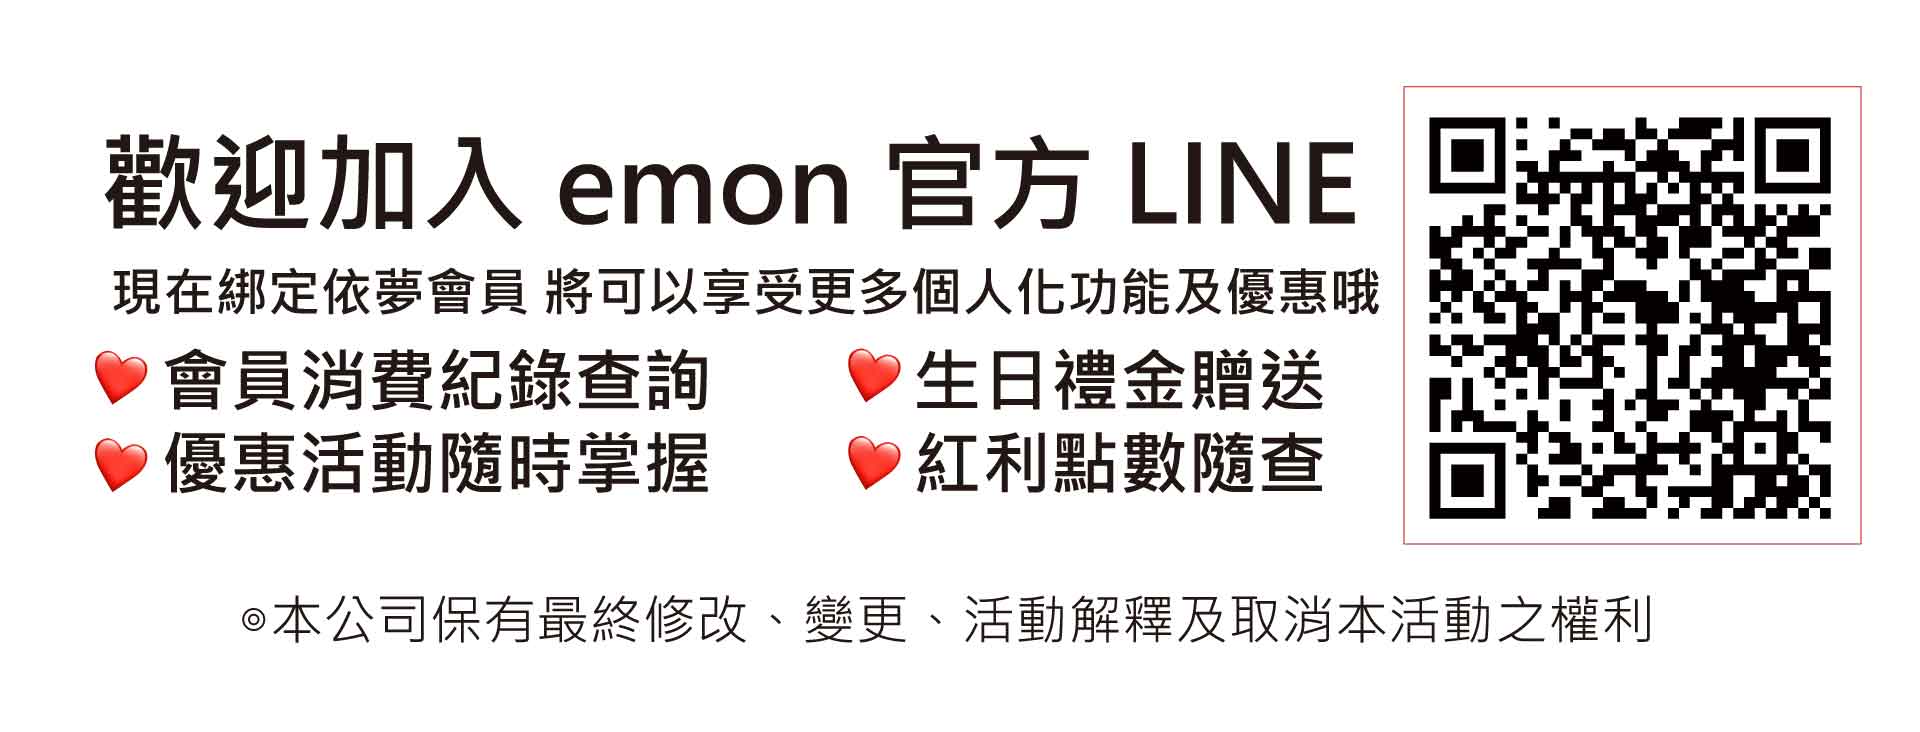 歡迎加入emon官方LINE